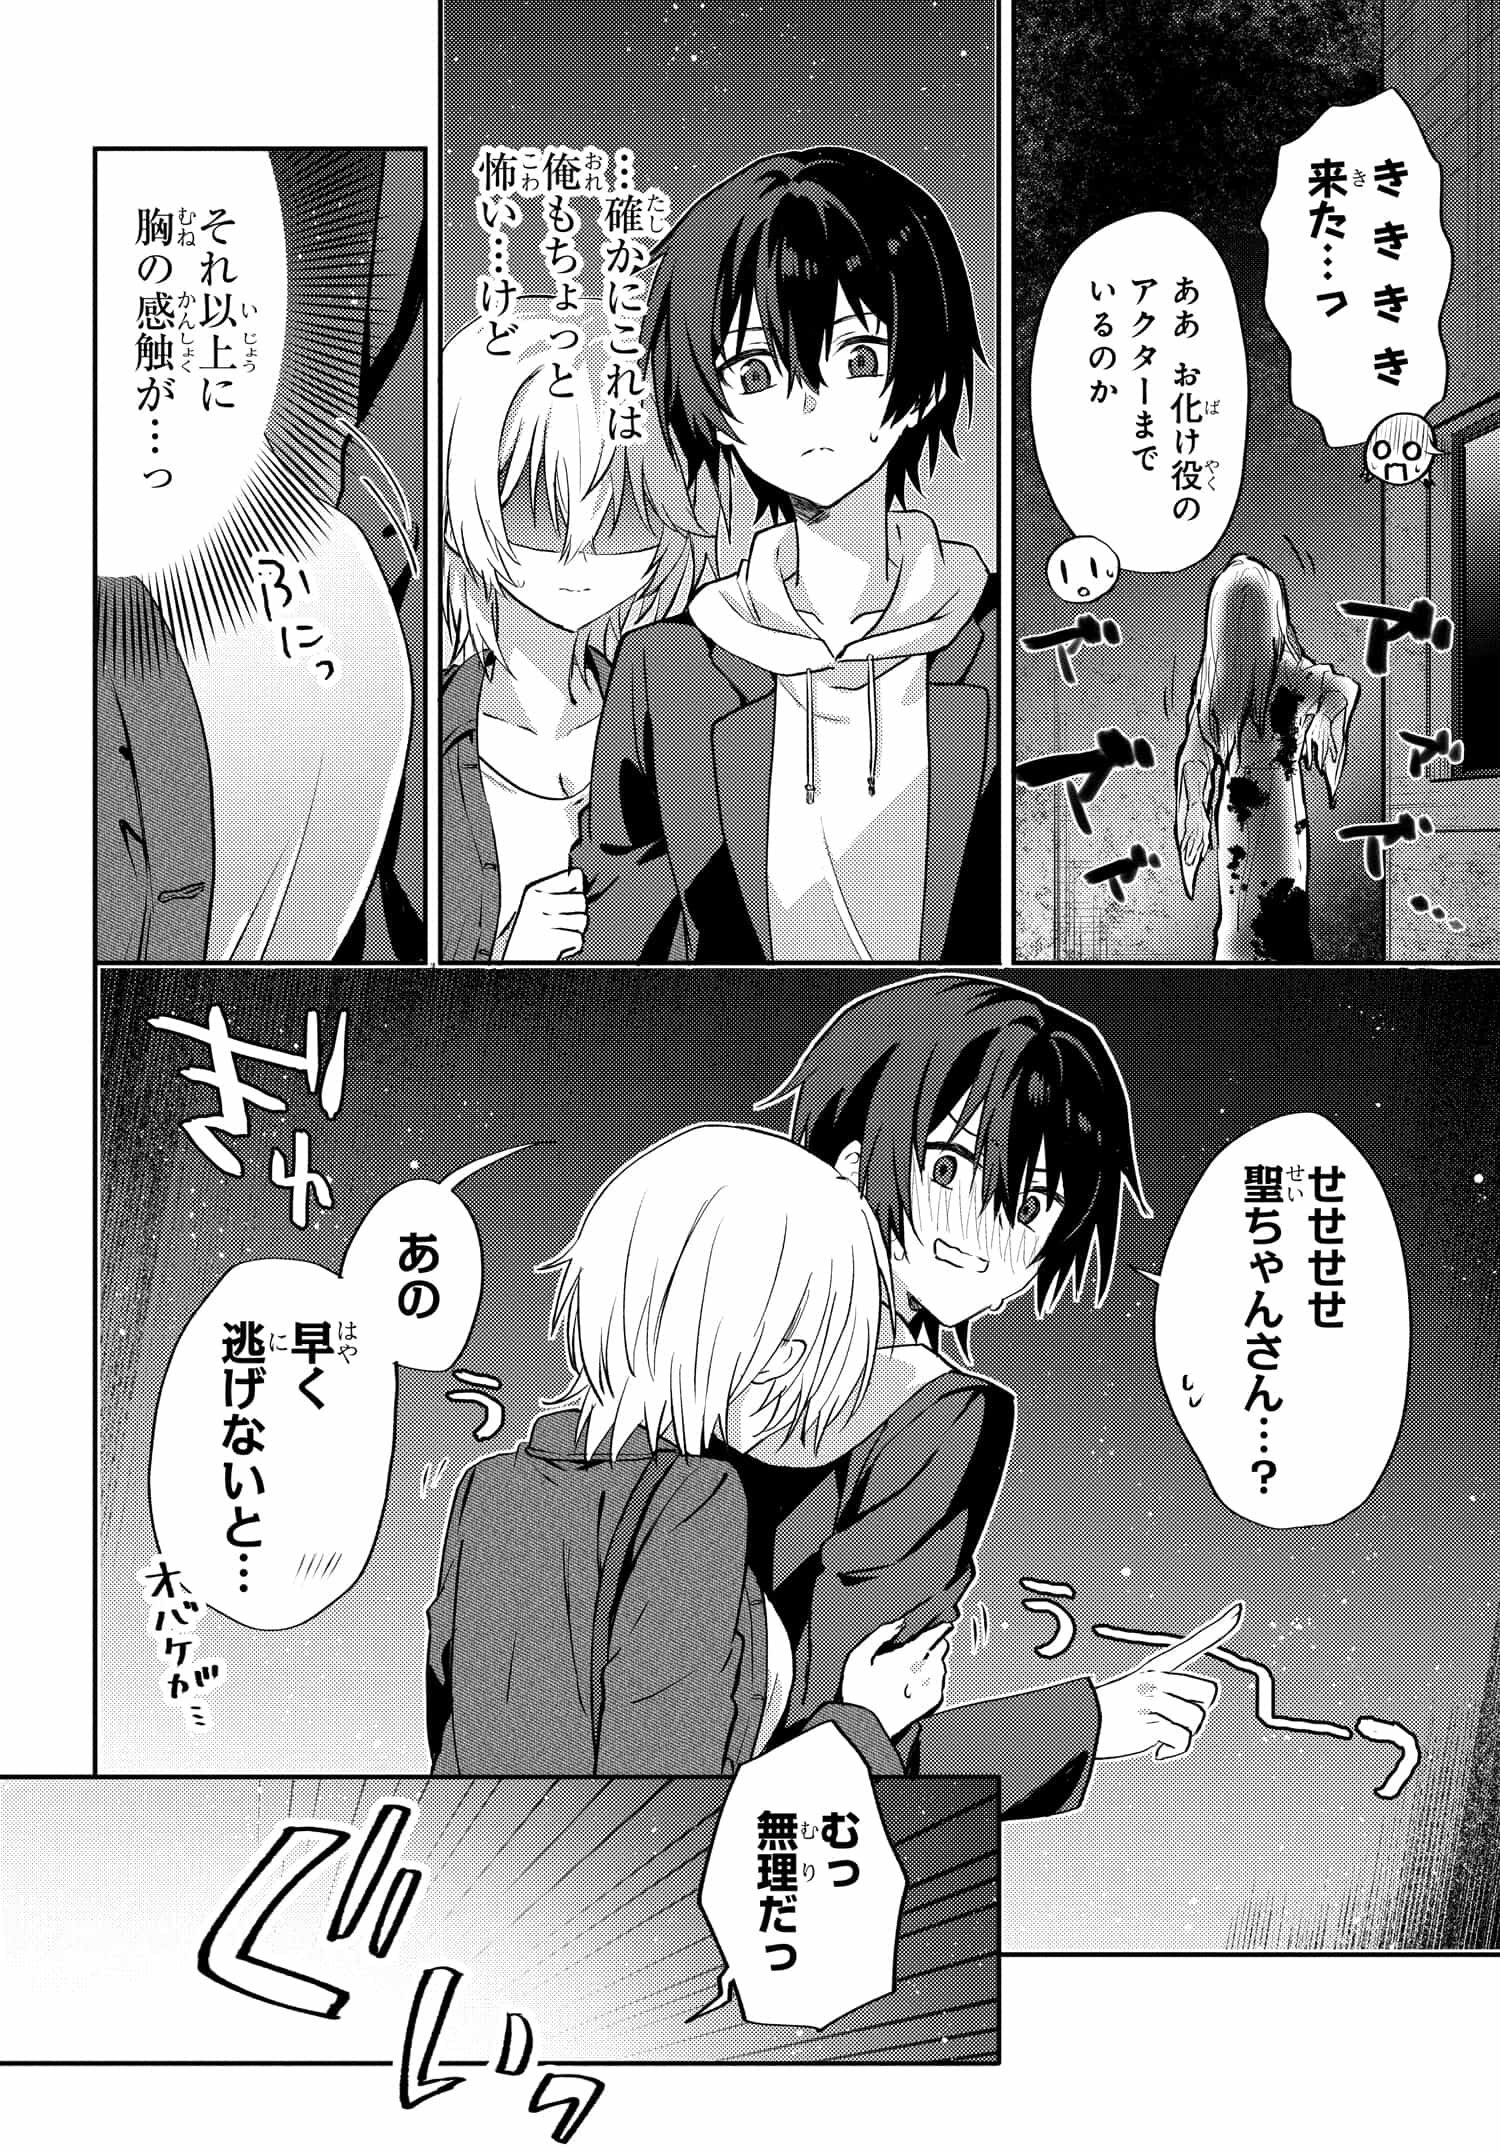 Romcom Manga ni Haitte Shimatta no de, Oshi no Make Heroine wo Zenryoku de Shiawase ni suru - Chapter 7.2 - Page 9